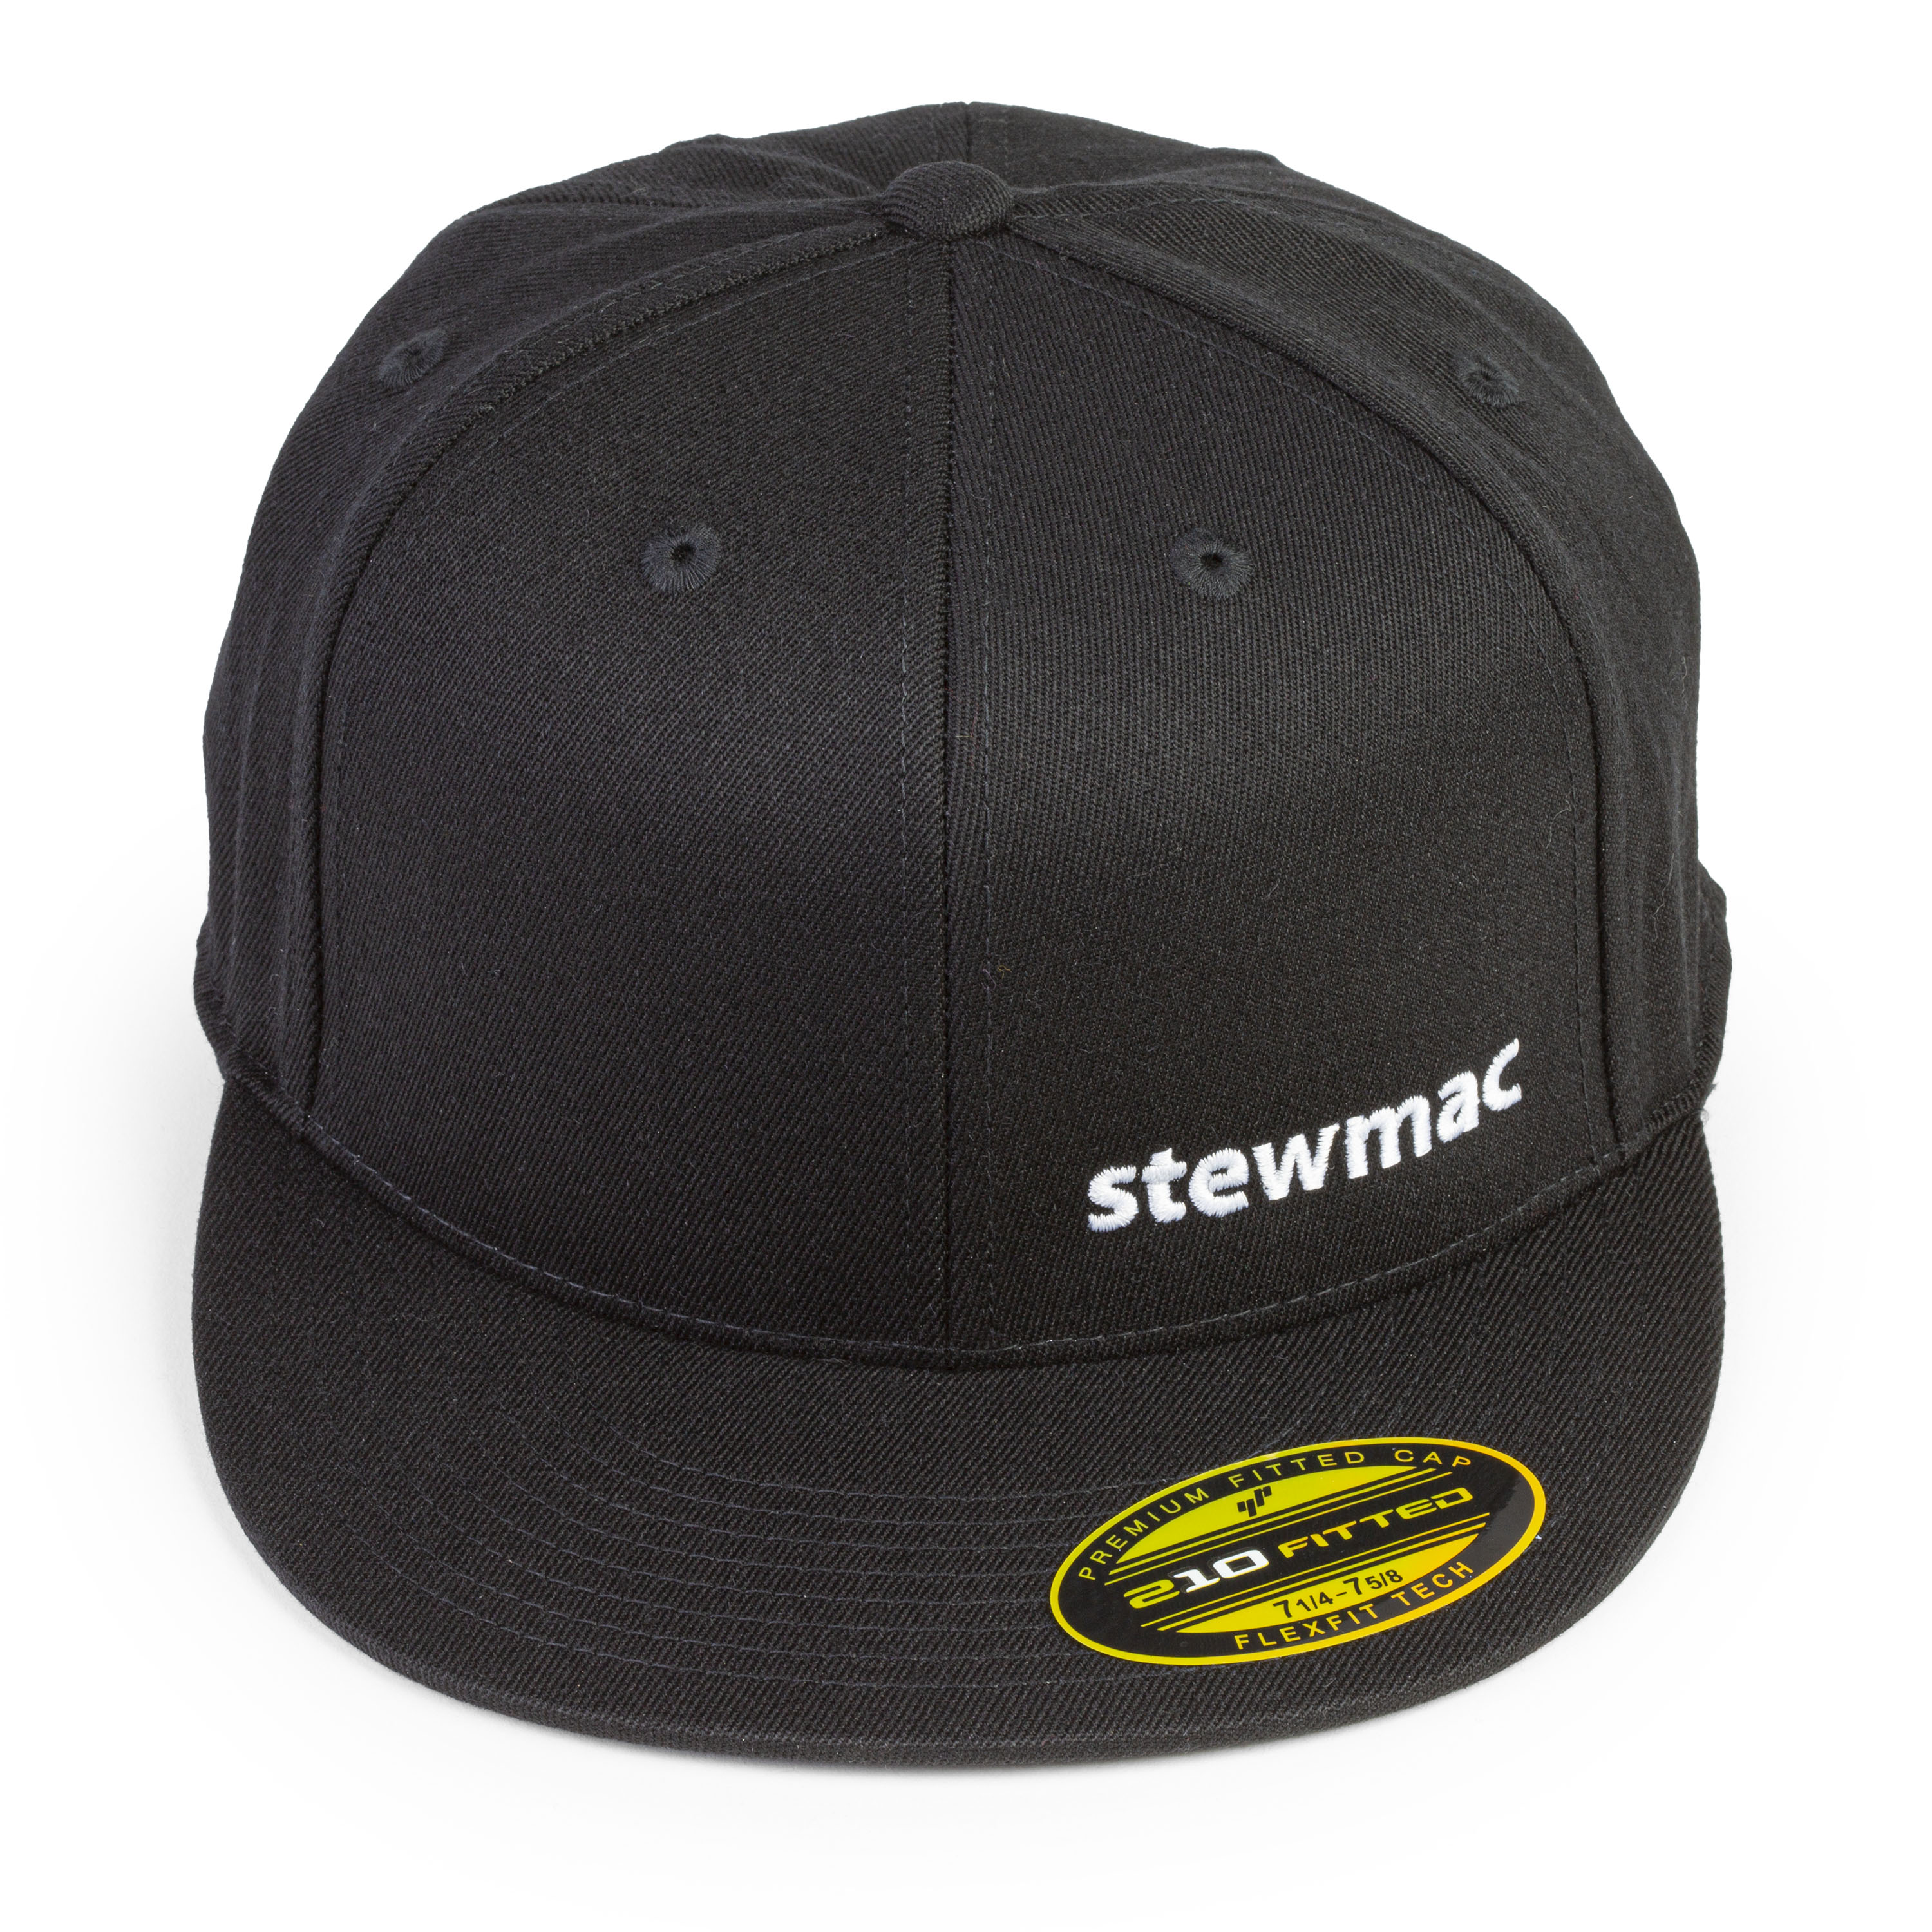 StewMac Flatbill Hat